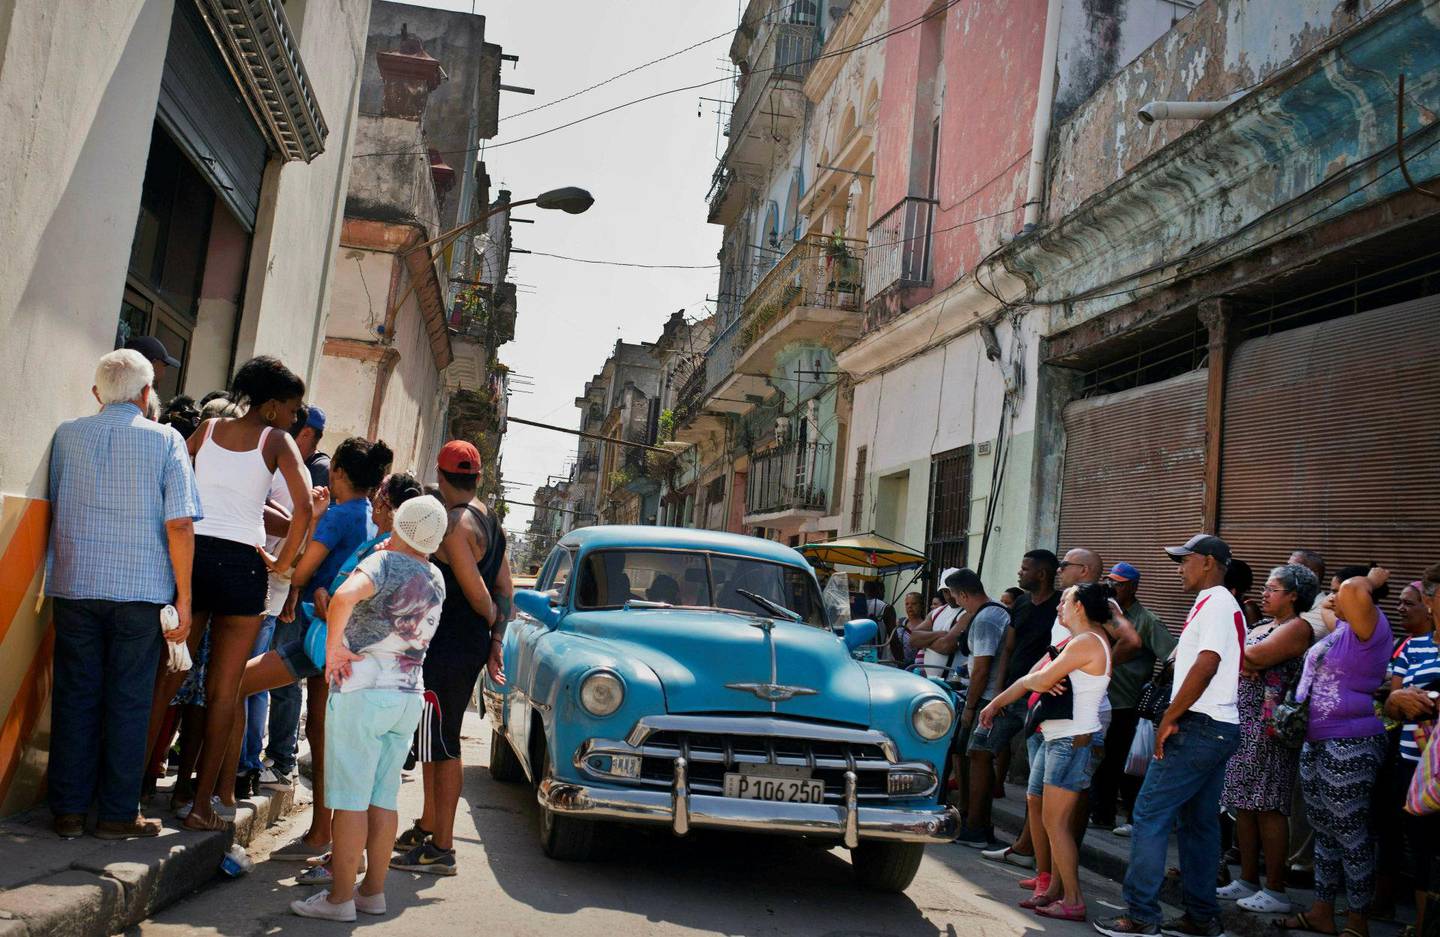 køer: Cubanere venter på å kjøpe mat utenfor en av de statsdrevne matbutikkene i Havanna i mai i år. FOTO: NTB SCANPIX